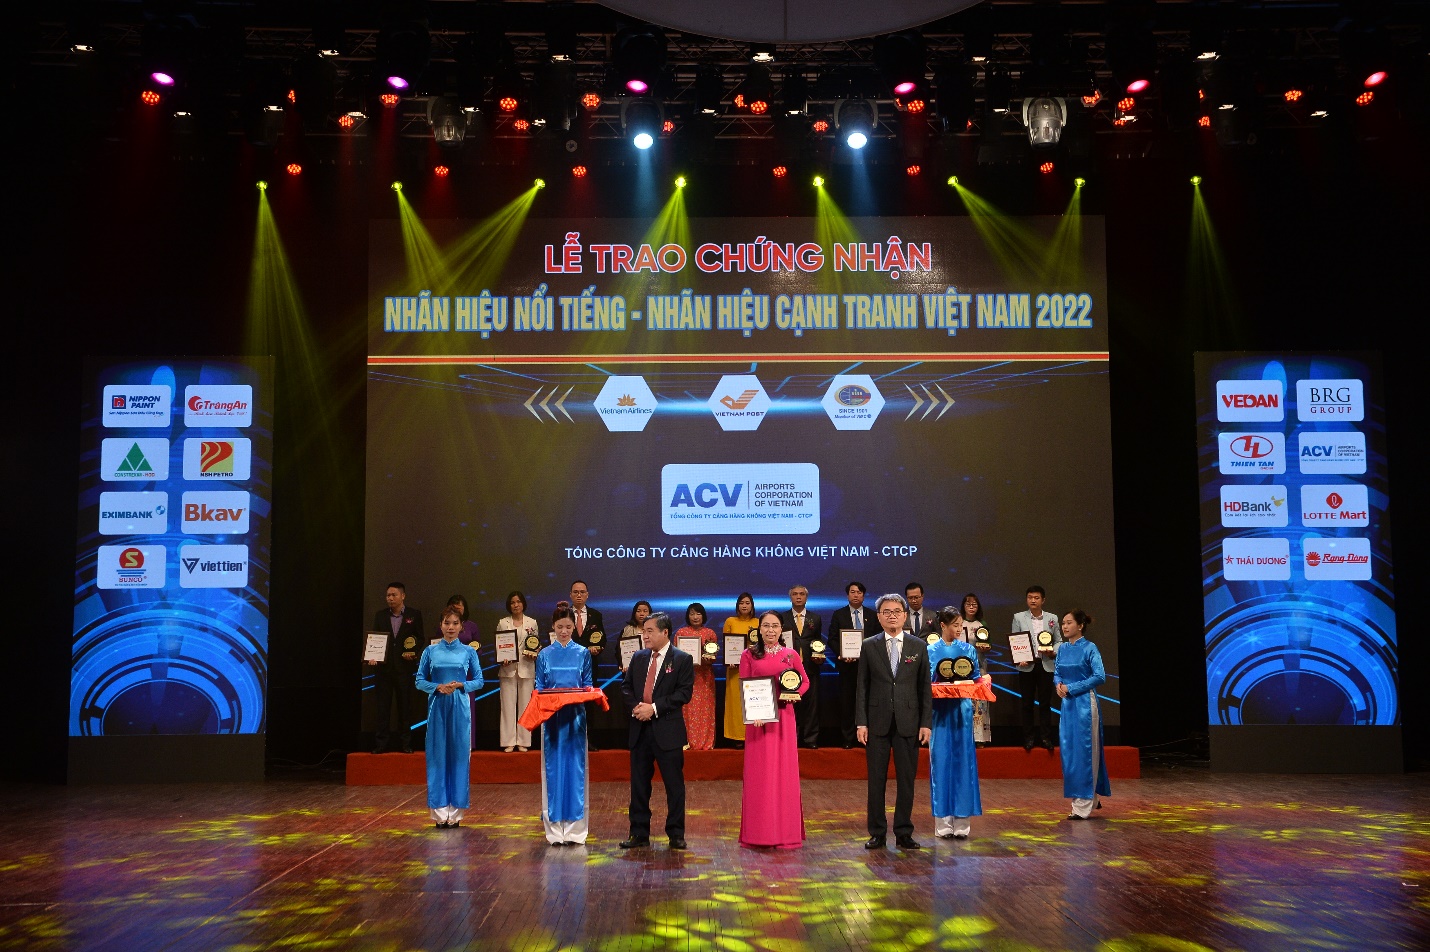 Tổng Công ty Cảng hàng không Việt Nam – CTCP (ACV) lần thứ 4 liên tiếp được vinh danh Nhãn hiệu nổi tiếng Việt Nam năm 2022 - 1